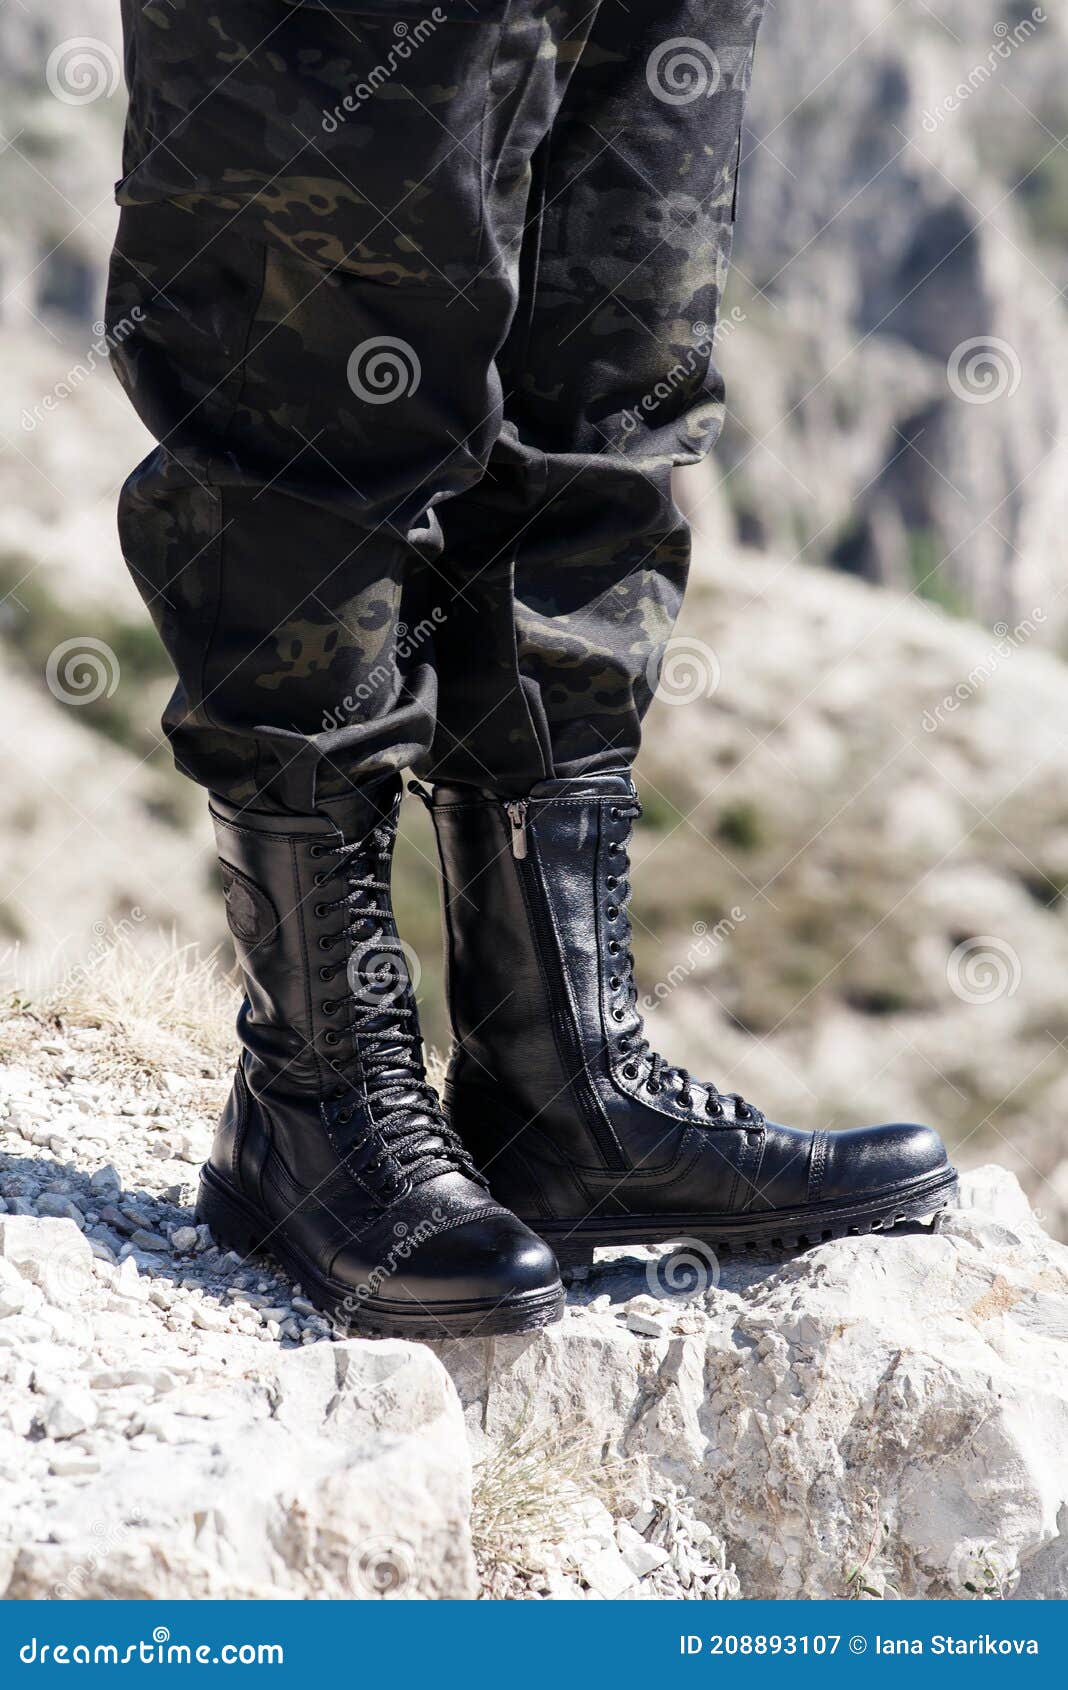 Botas Negras Con Cordones Unisex Pantalones Caqui Imagen de archivo - Imagen de calzado, ropa: 208893107